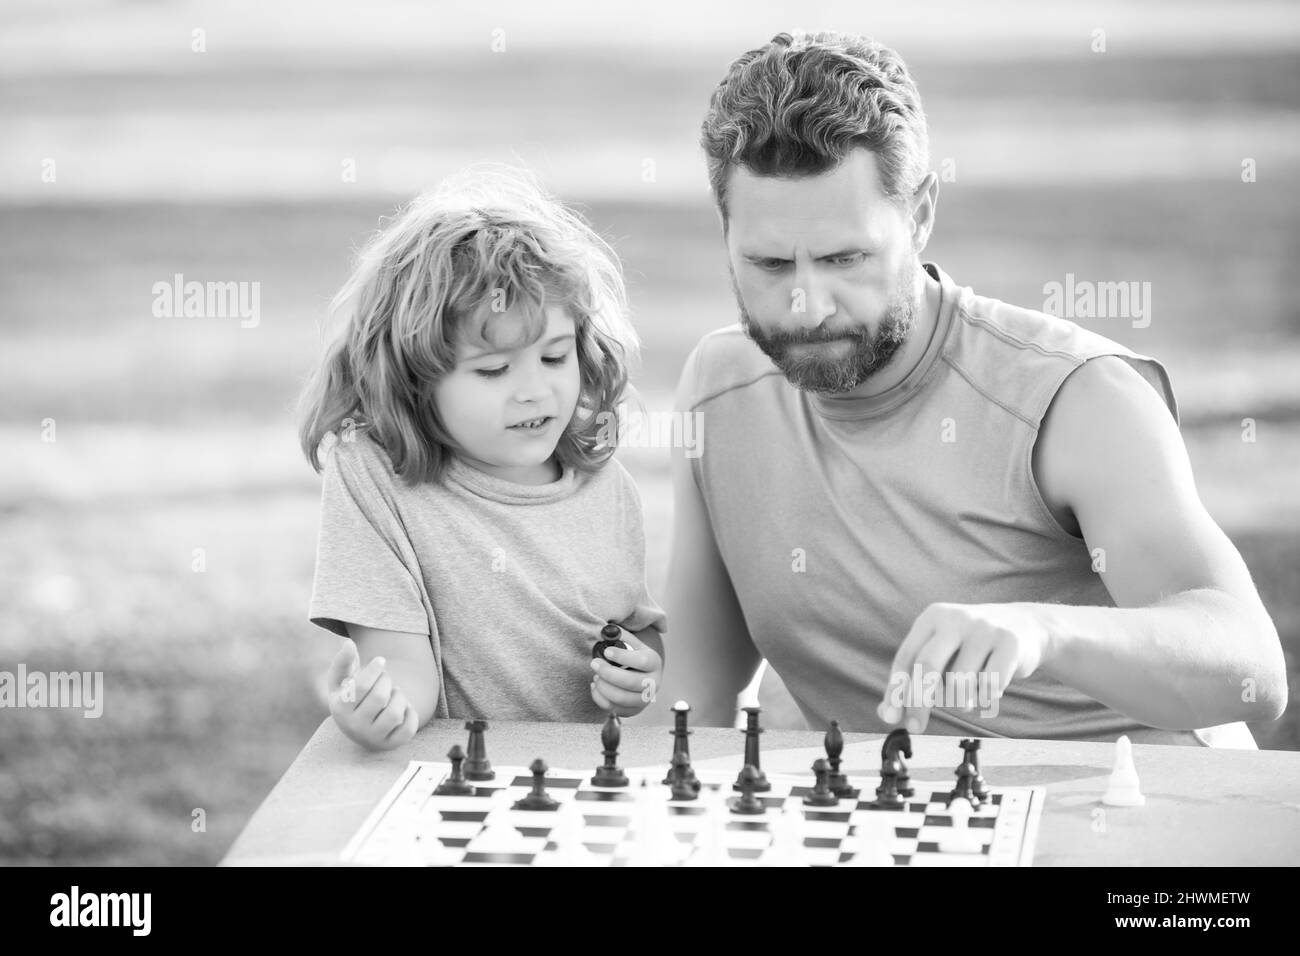 Fils se posant sur l'herbe et jouant aux échecs avec le père. Enfant garçon concentré développant la stratégie d'échecs, jouant à un jeu de société avec parent. Jeux et Banque D'Images